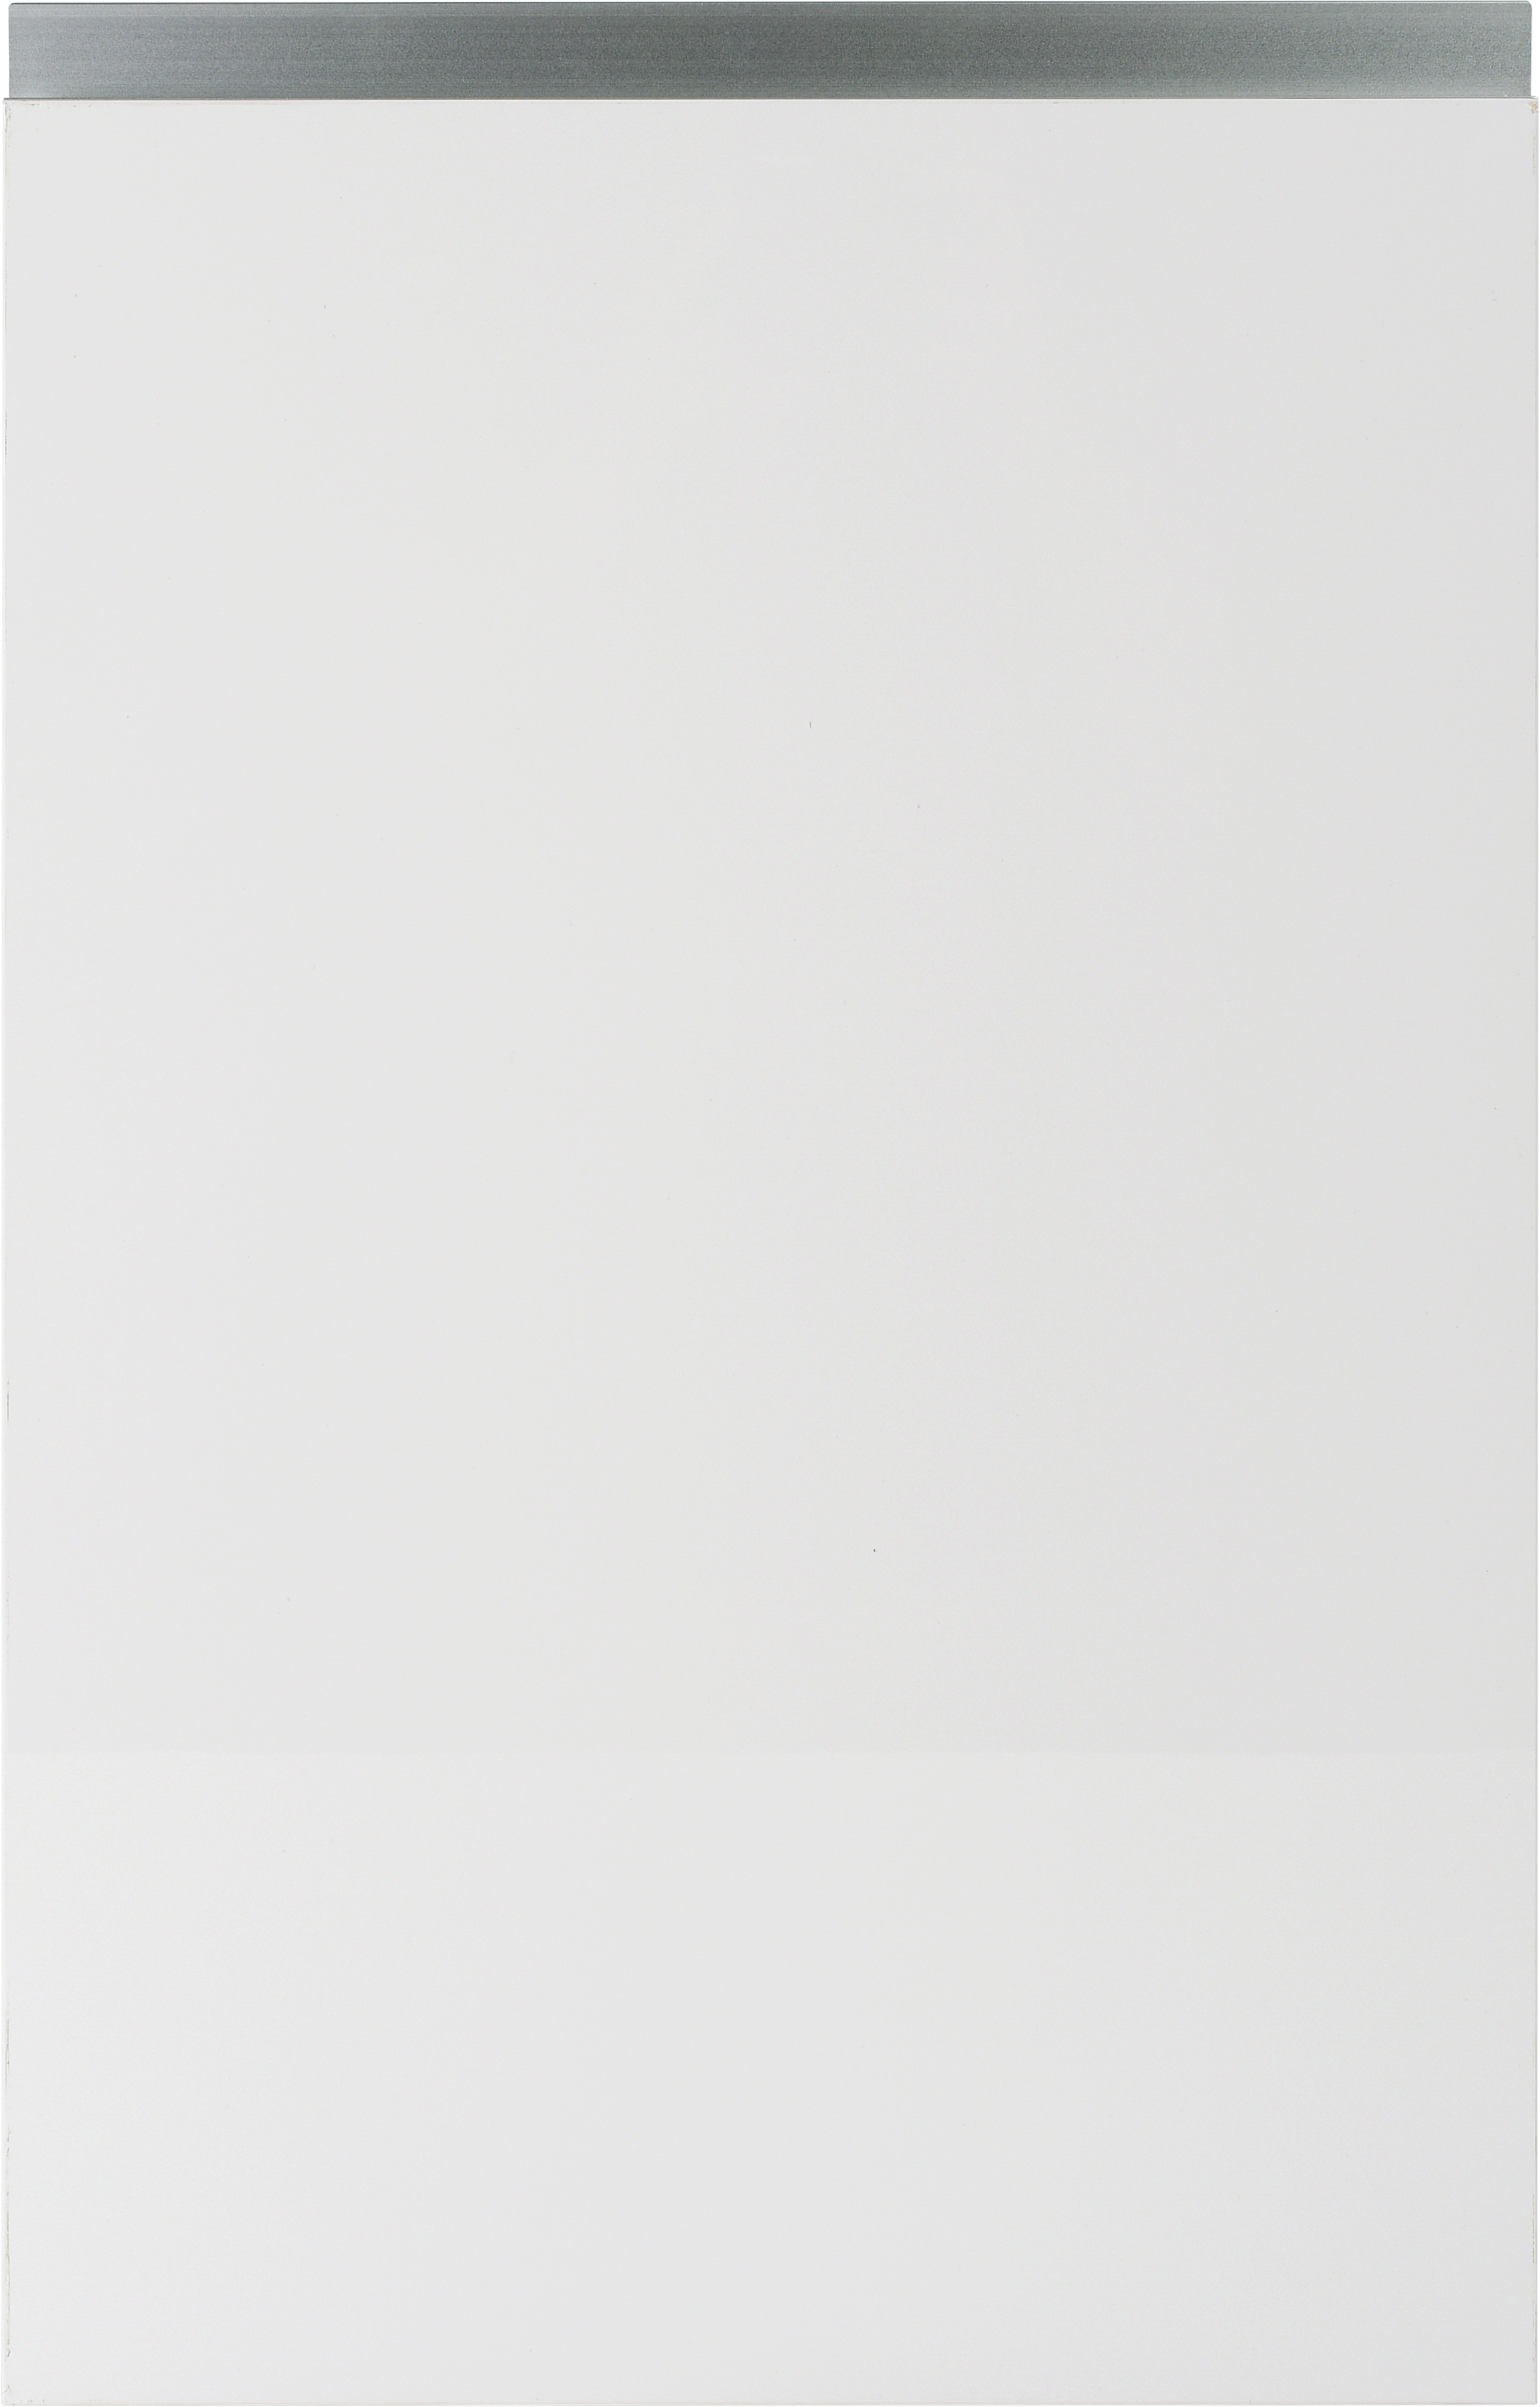 Puerta para mueble de cocina mikonos blanco brillo 64x40 cm